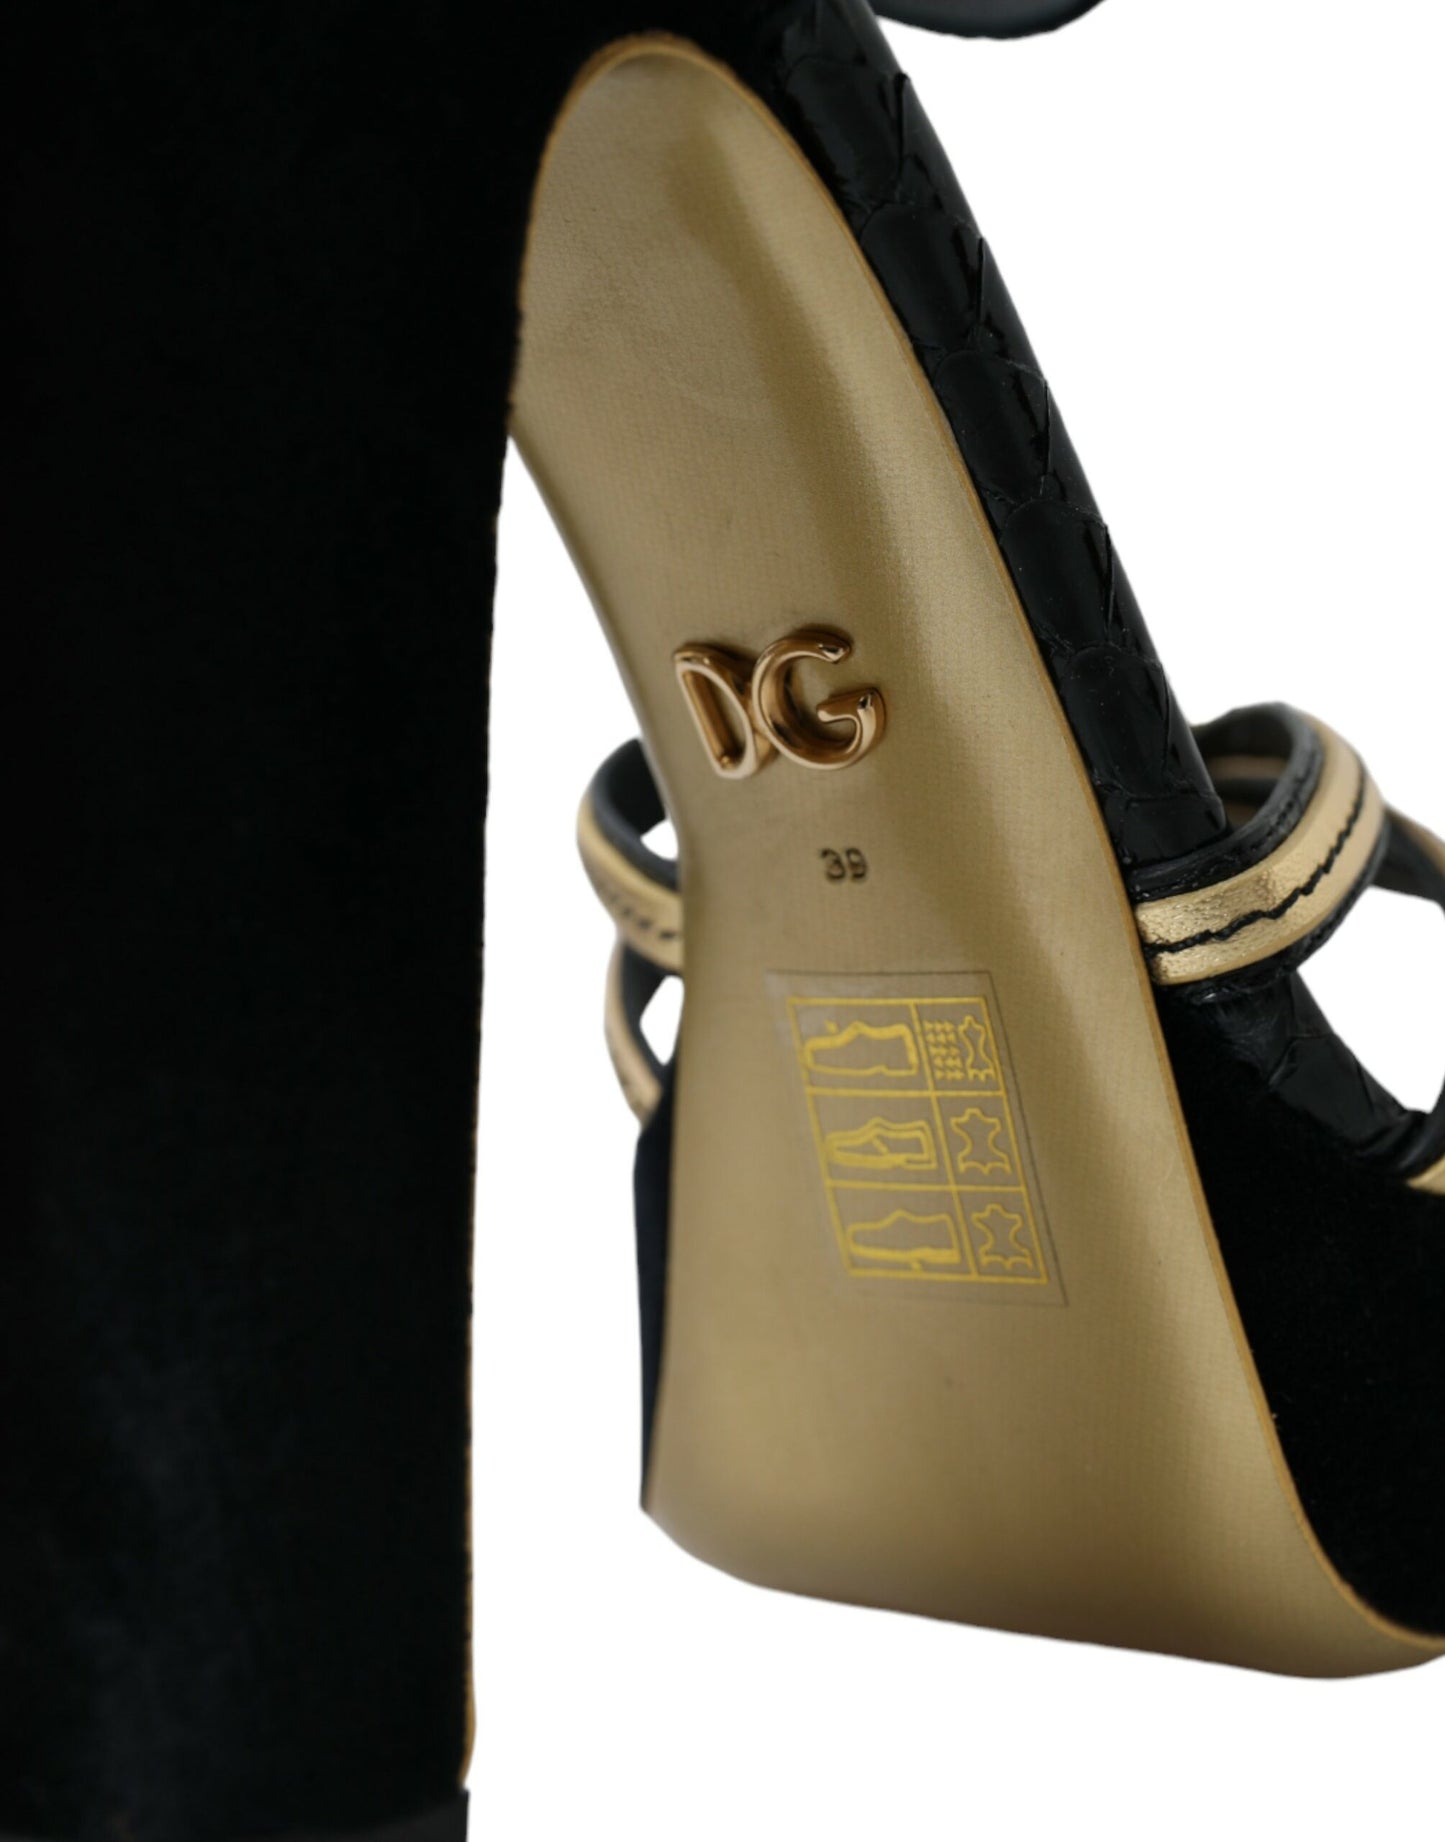 Black Gold Embellished Heels Sandals Shoes